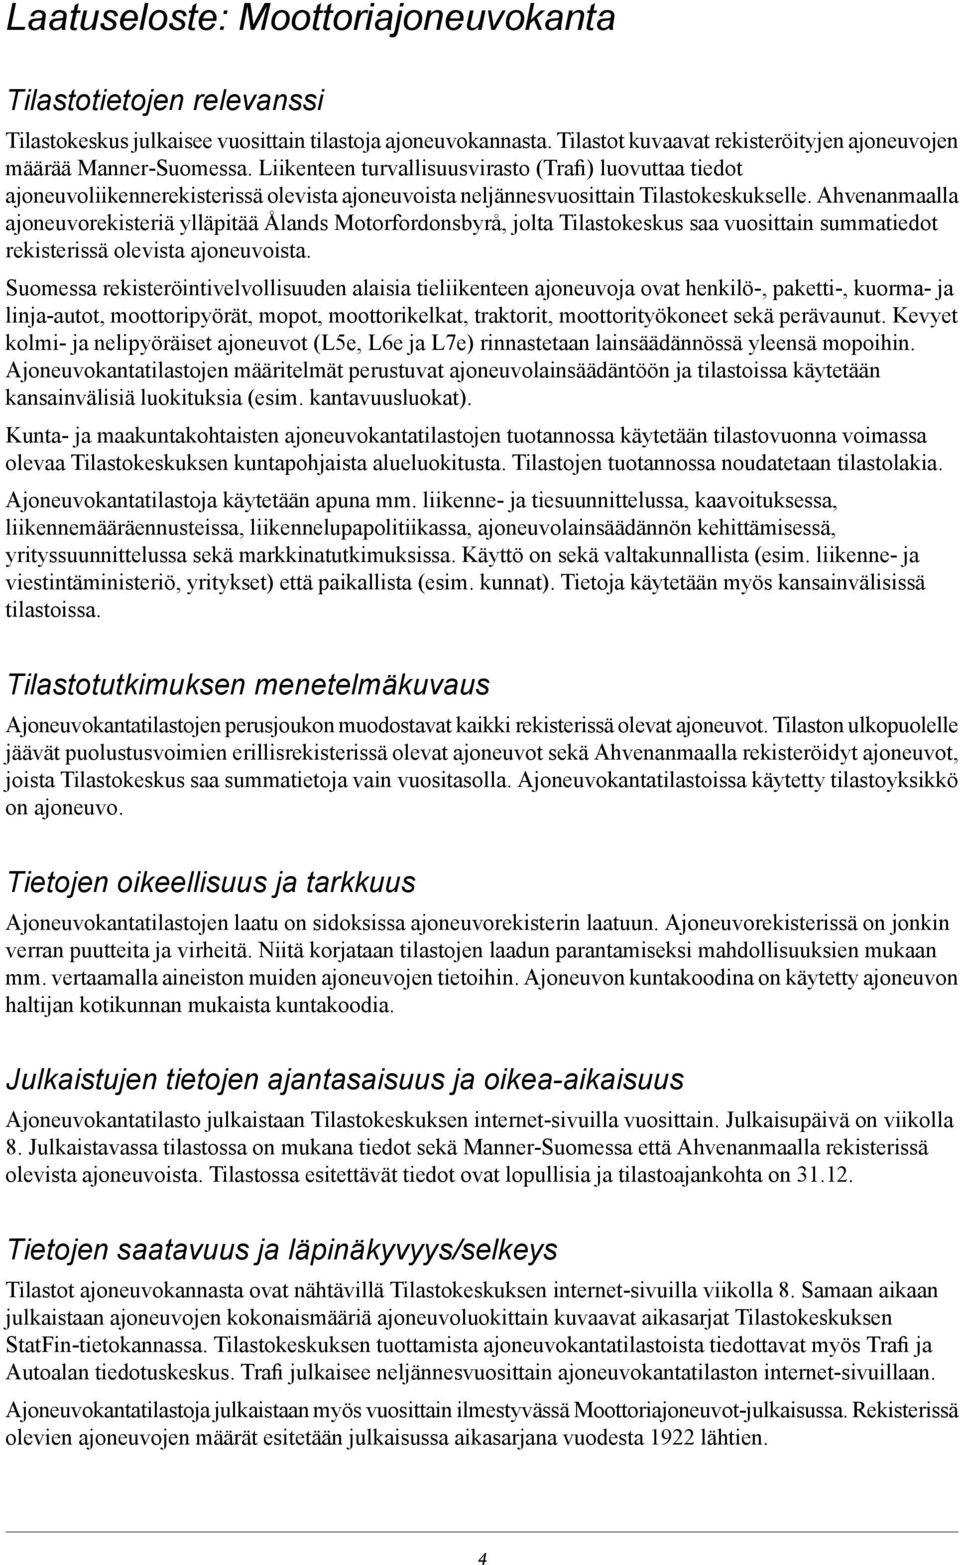 Ahvenanmaalla ajoneuvorekisteriä ylläpitää Ålands Motorfordonsbyrå, jolta Tilastokeskus saa vuosittain summatiedot rekisterissä olevista ajoneuvoista.